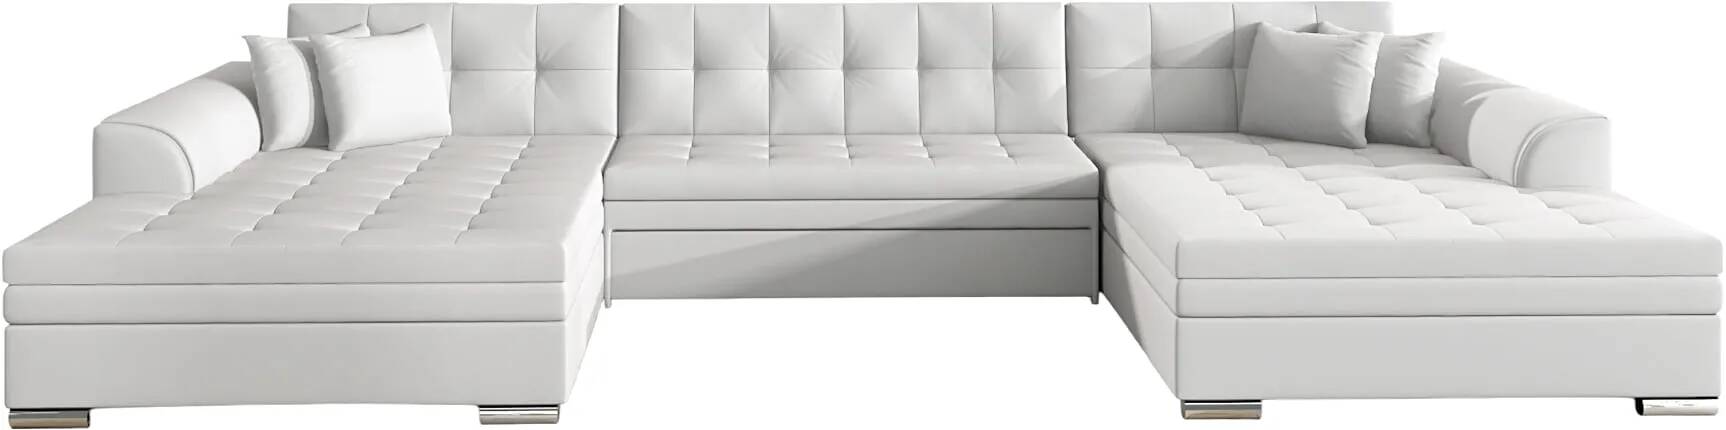 Canapé d'angle convertible en simili cuir blanc